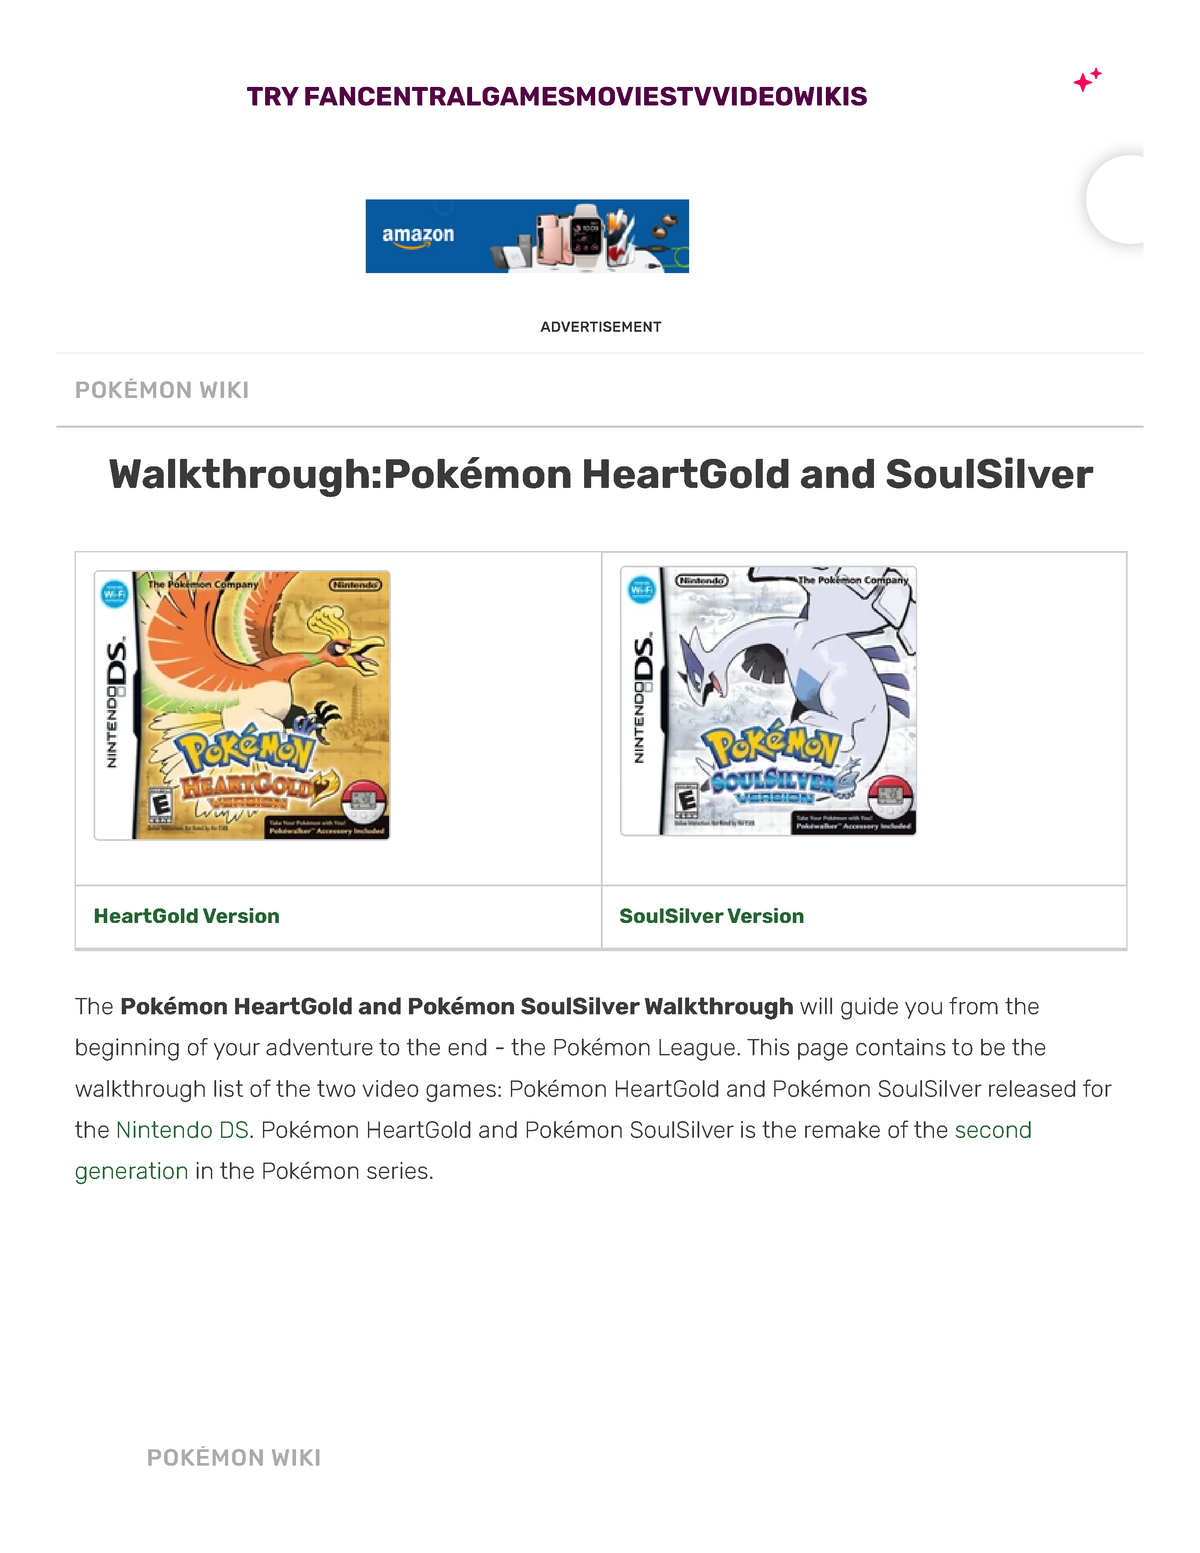 Walkthrough:Pokémon HeartGold and SoulSilver, Pokémon Wiki